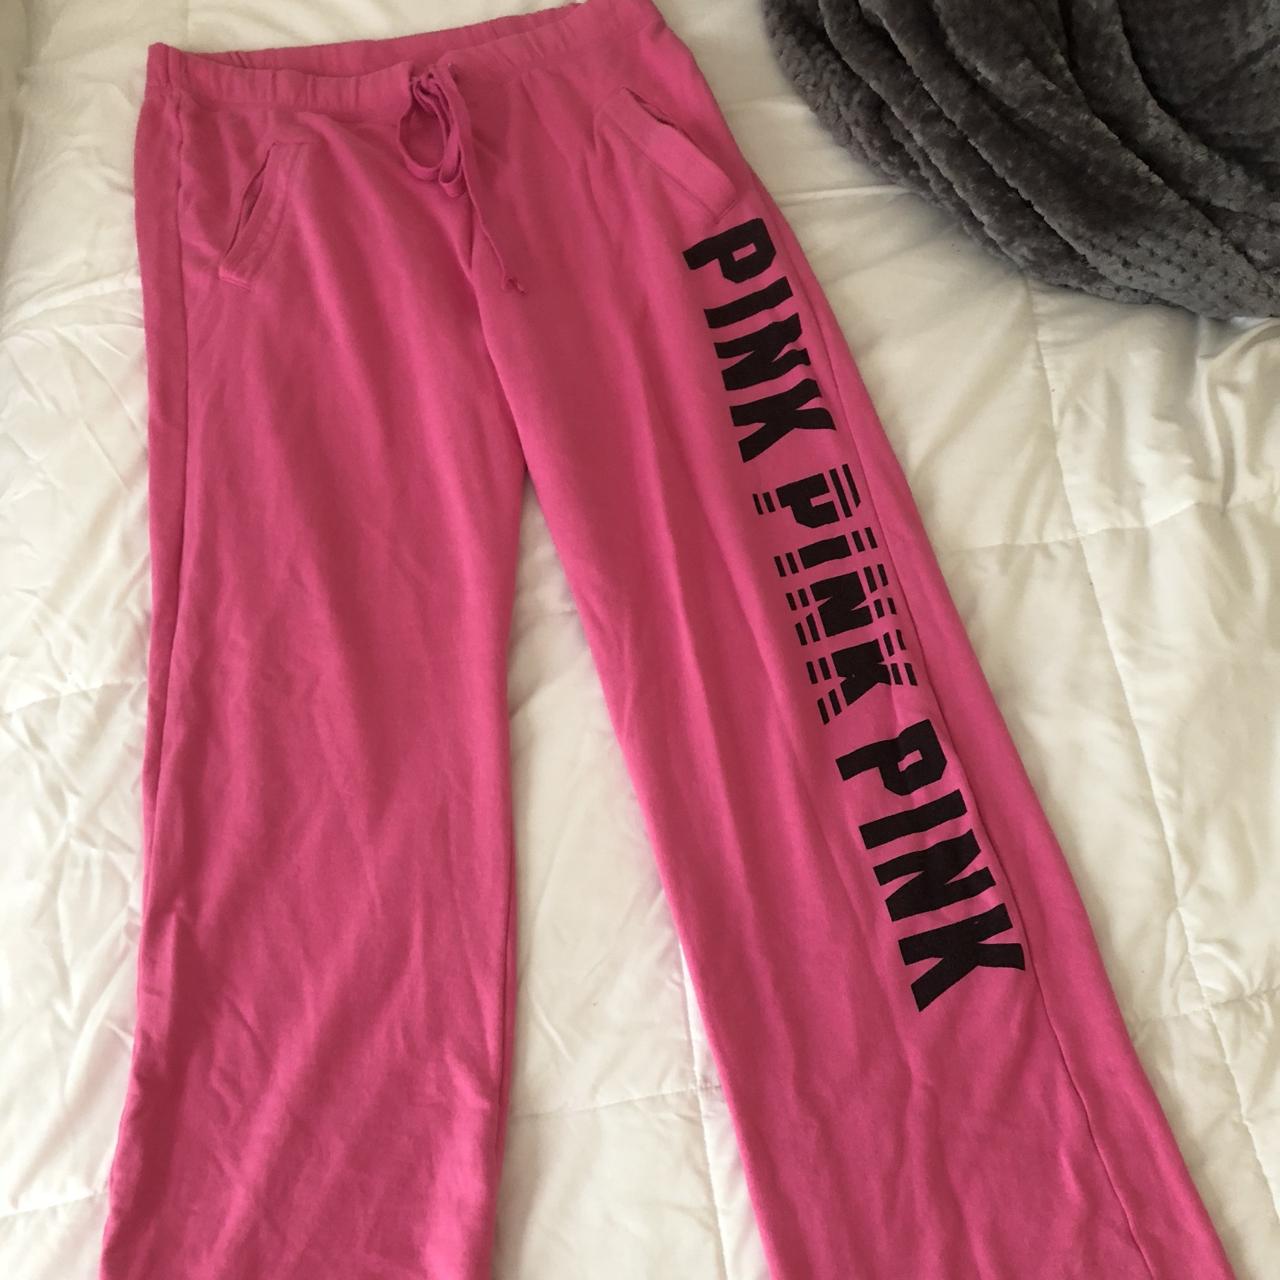 Victorias secret pink sweat pants #vs #sweatpants